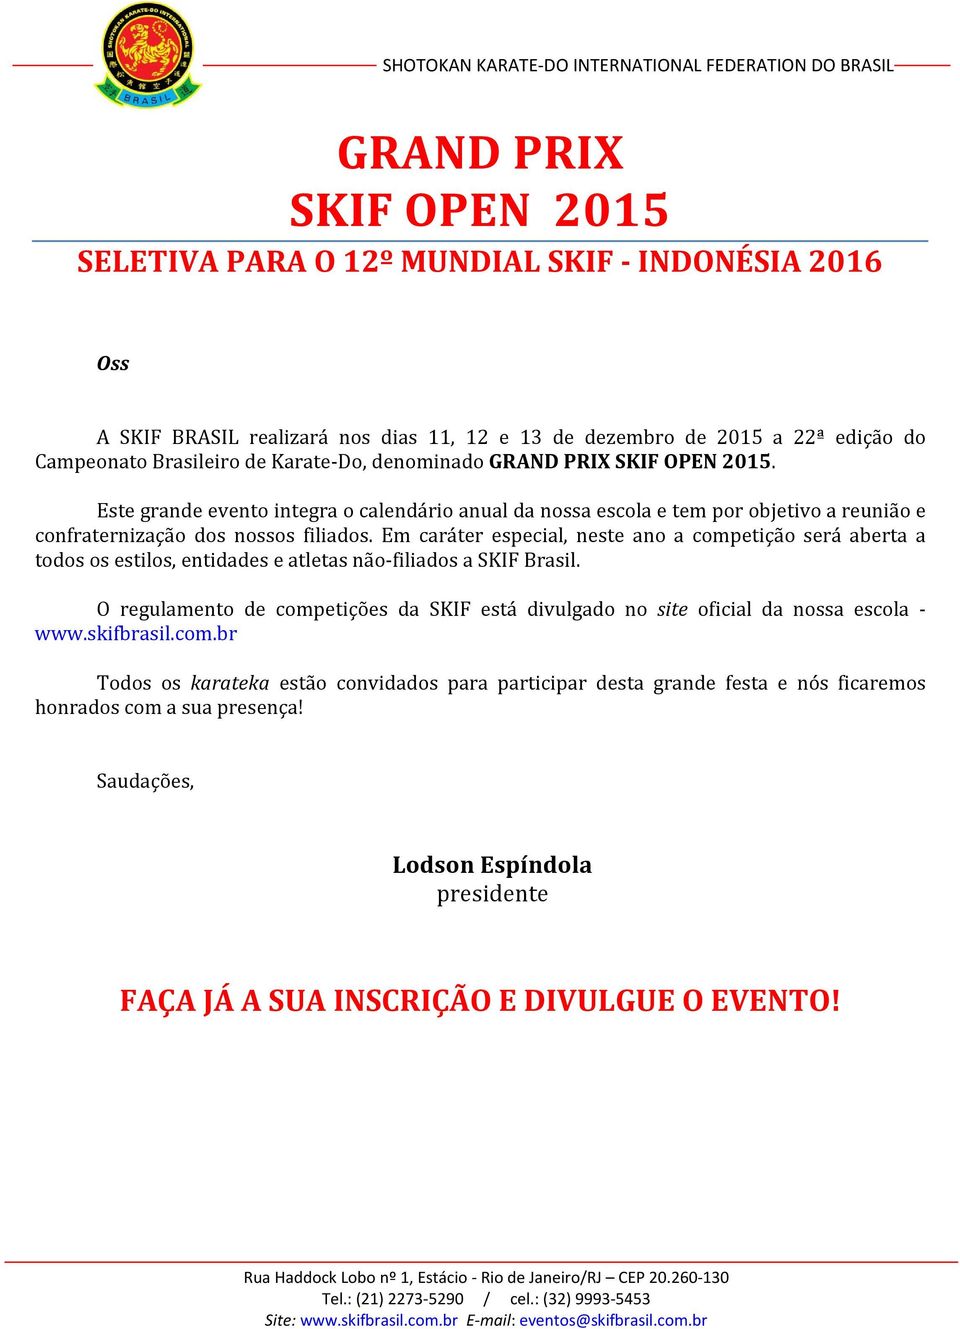 Em caráter especial, neste ano a competição será aberta a todos os estilos, entidades e atletas não-filiados a SKIF Brasil.